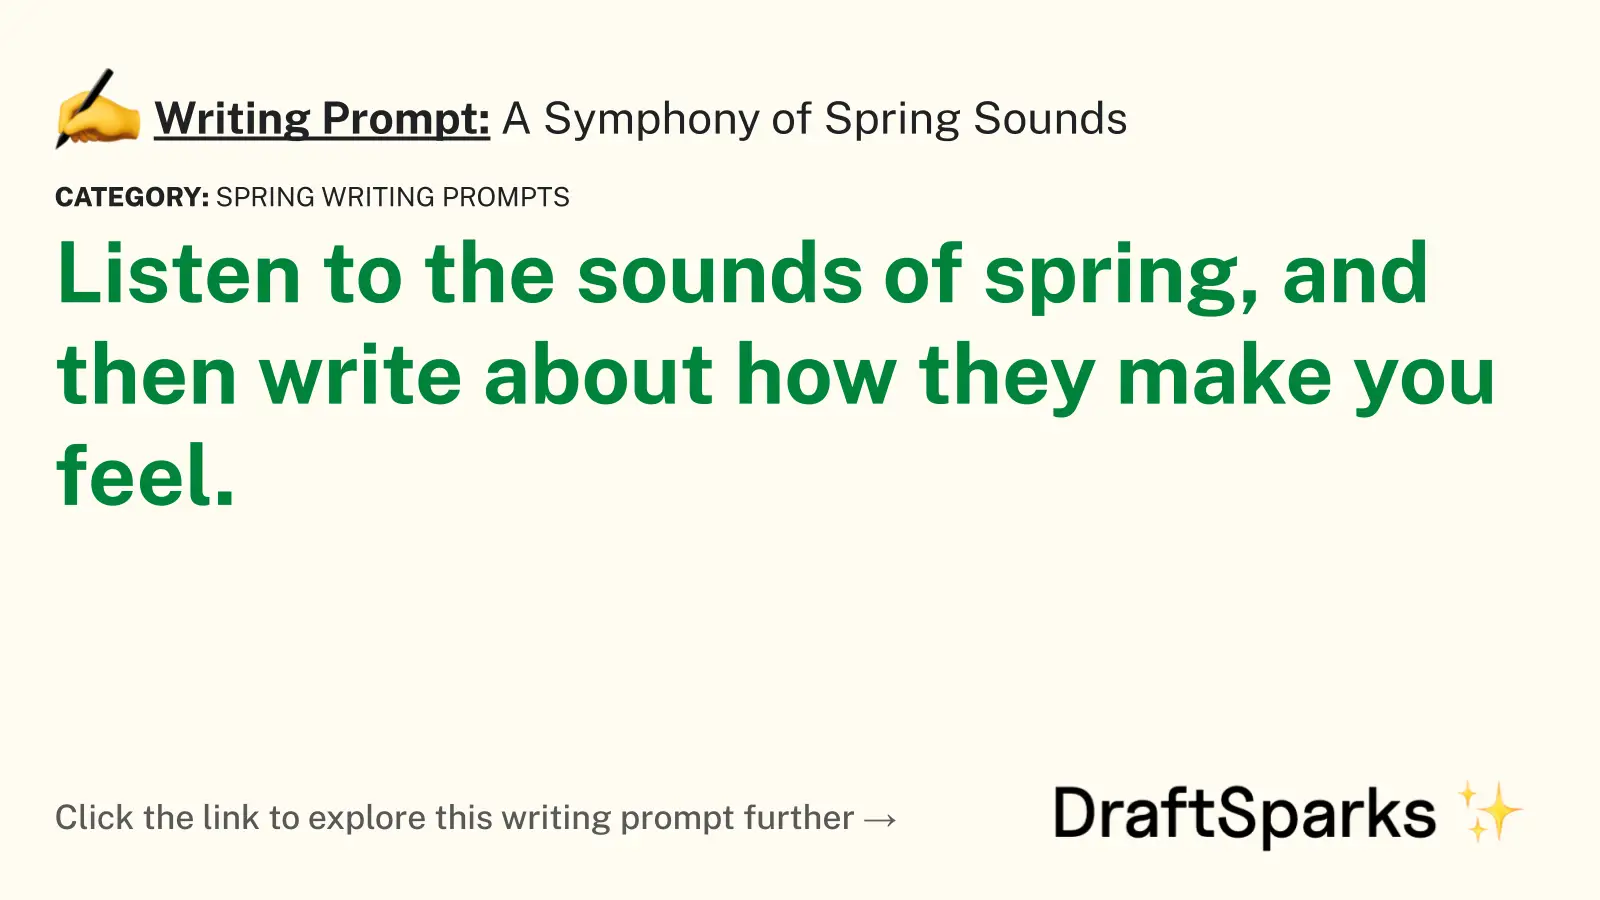 A Symphony of Spring Sounds